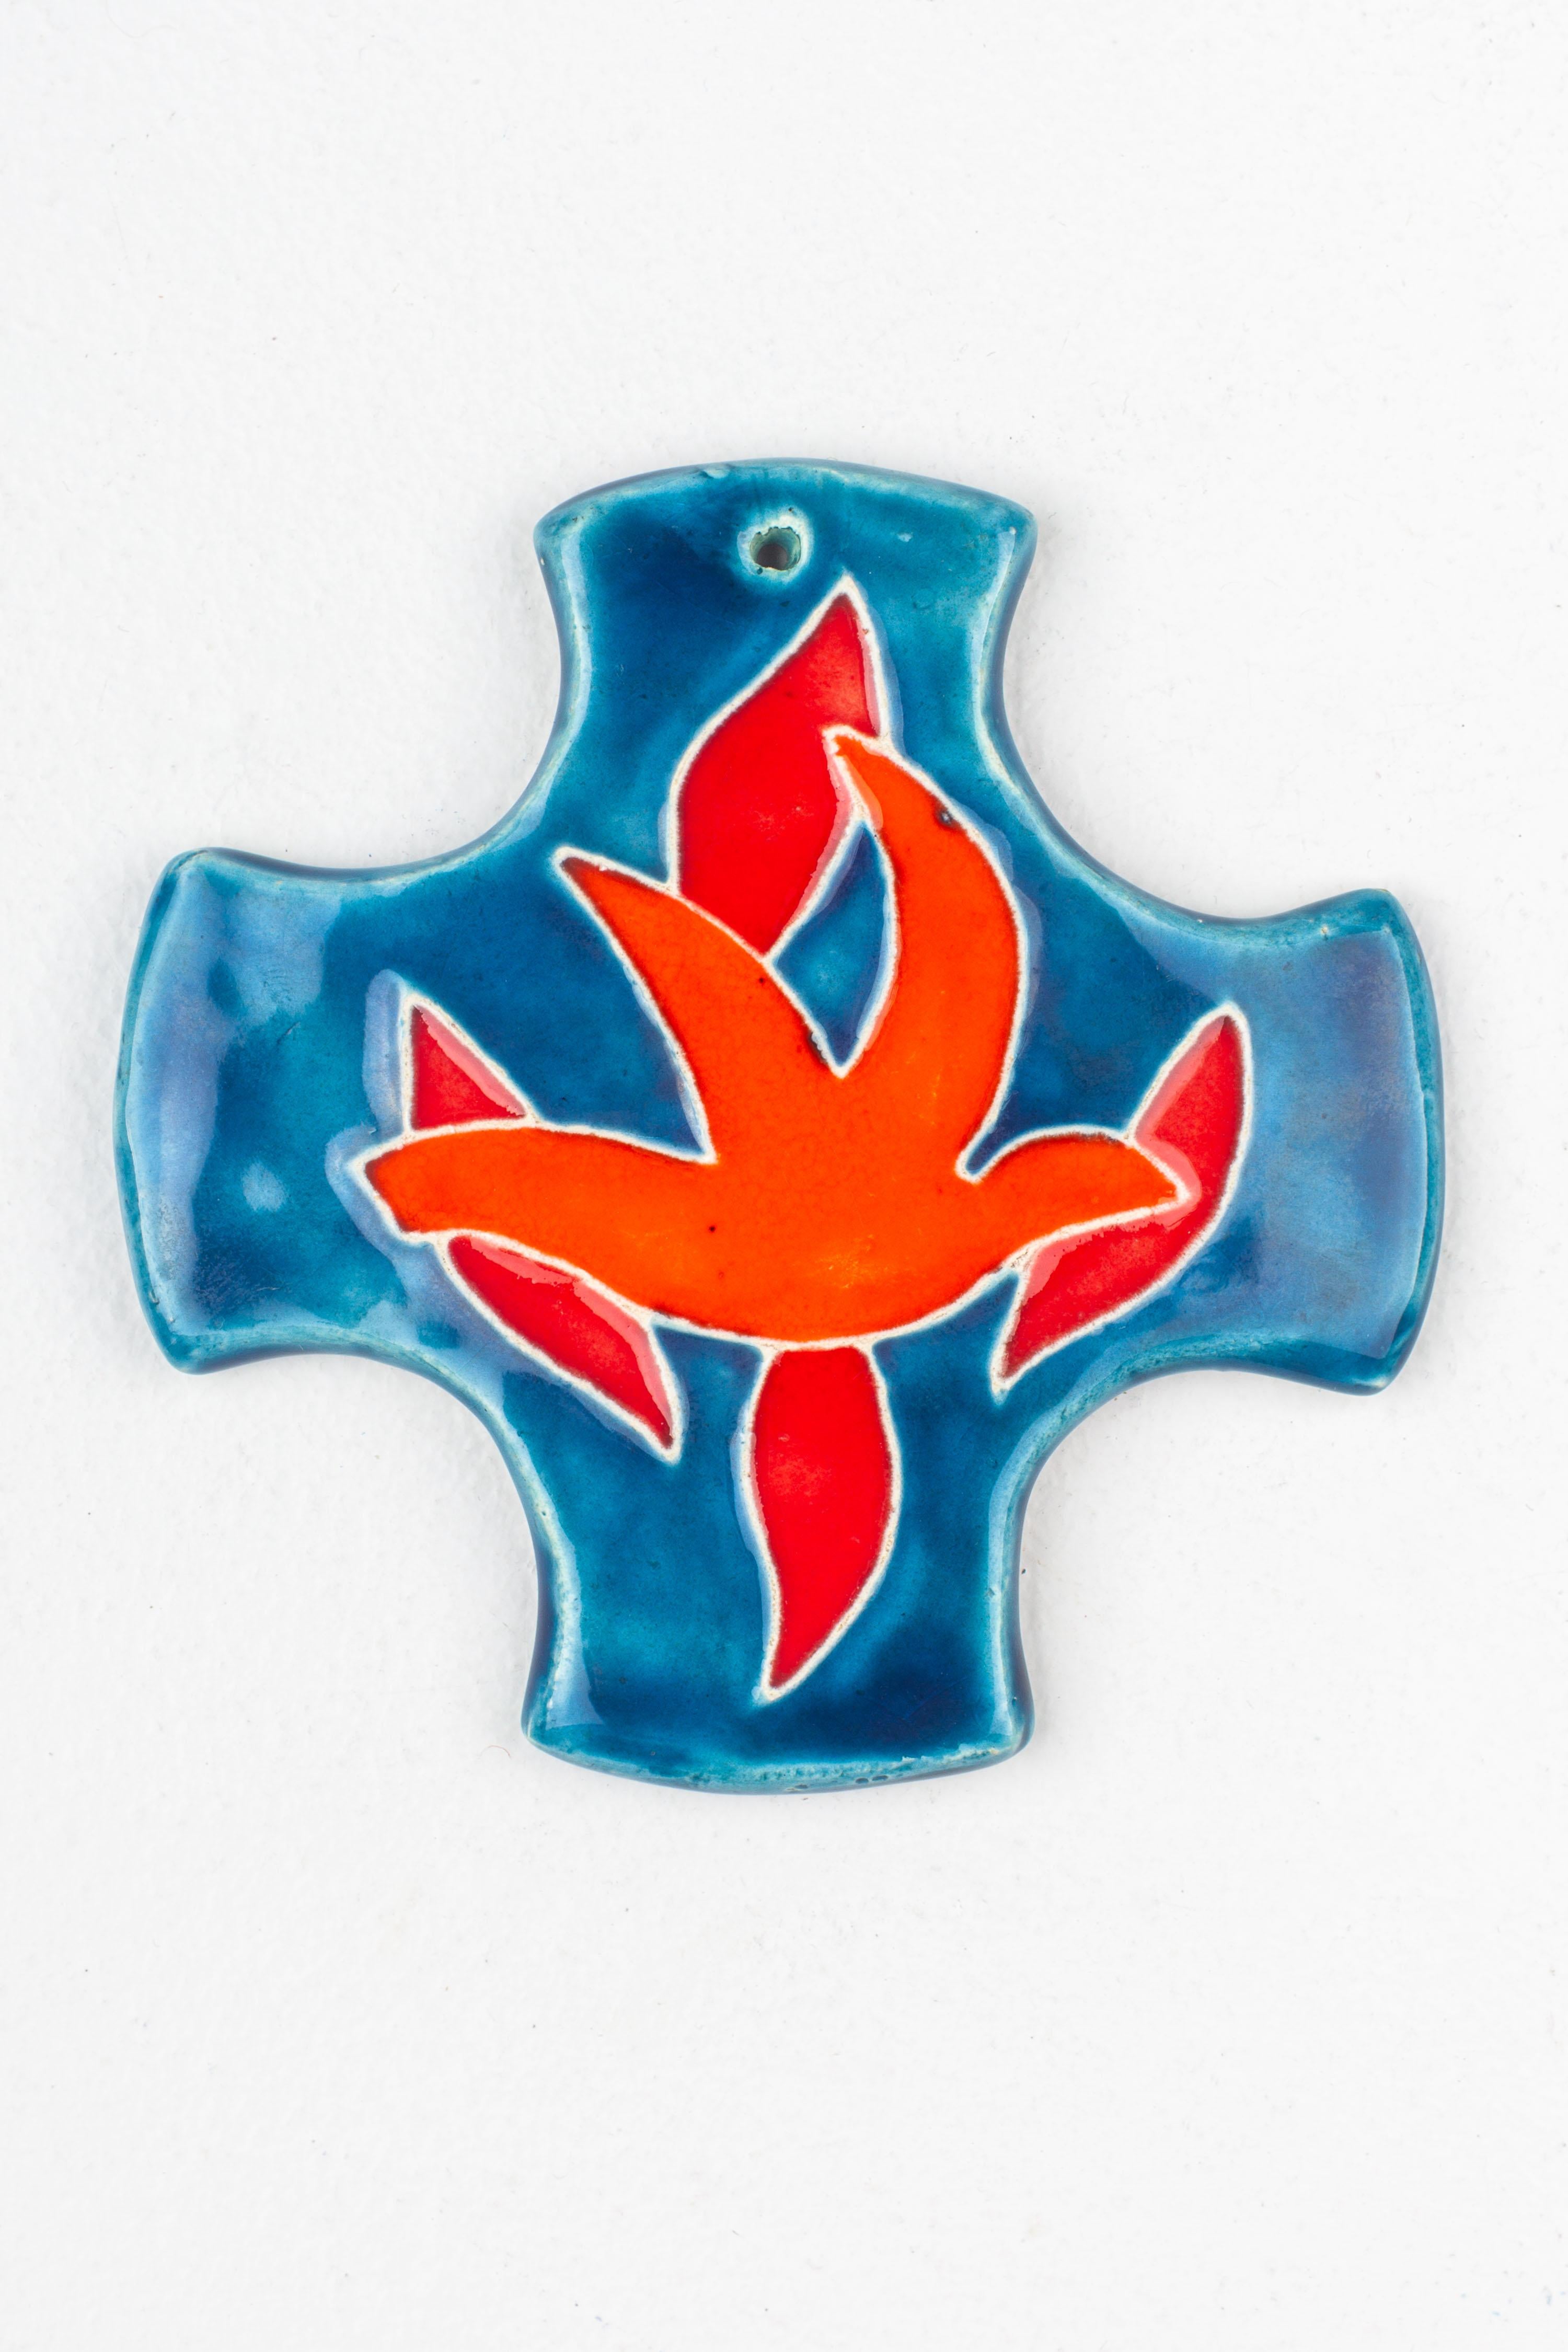 Dieses bezaubernde Keramikkreuz aus der Mitte des Jahrhunderts ist ein schönes Beispiel für die innovative Herangehensweise dieser Zeit an die traditionelle religiöse Symbolik. Das von europäischen Studiokünstlern gefertigte Kreuz zeichnet sich